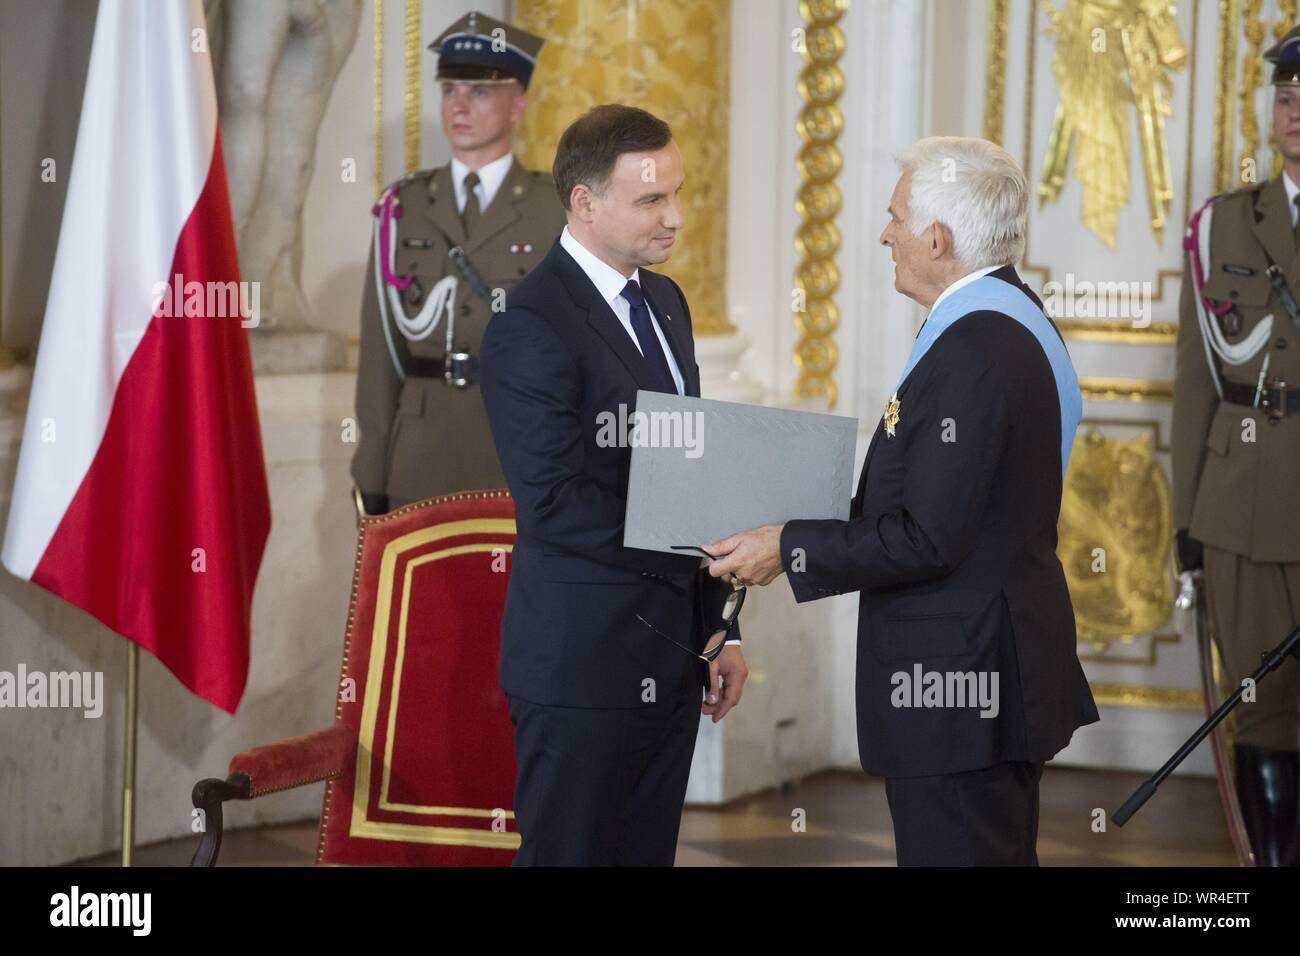 El 6 de agosto de 2015, en Varsovia, inauguración presidencial en Polonia: Andrzej Duda juramento como nuevo presidente polaco. Recibe las insignias de las órdenes en el Royal Foto de stock